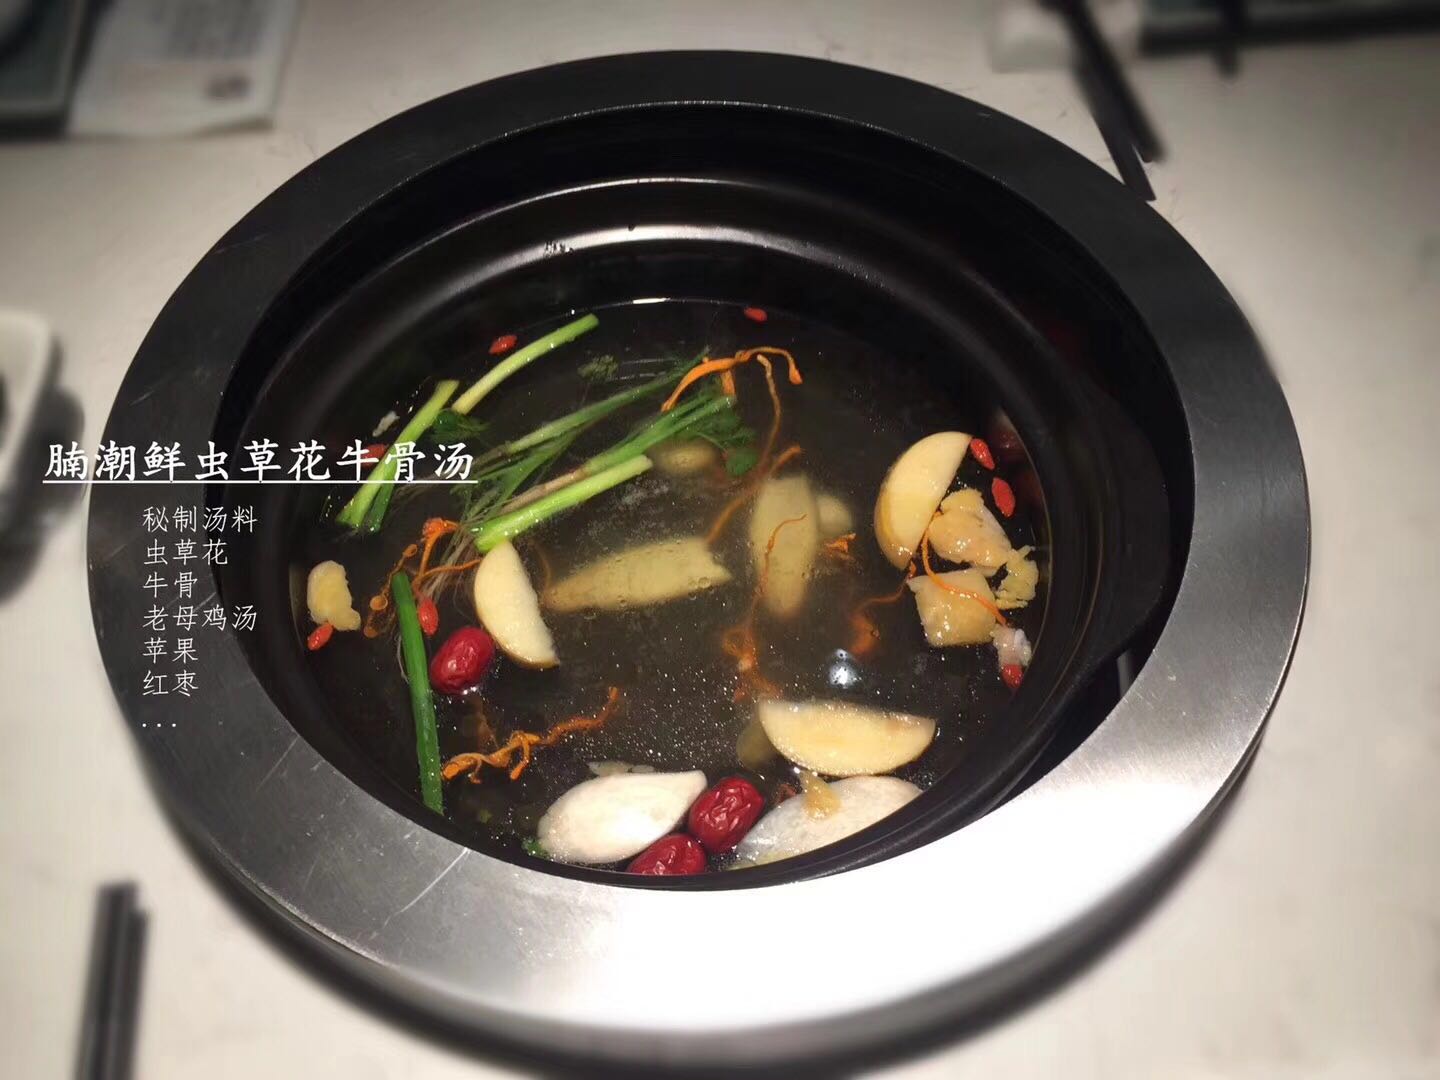 腩潮鲜锅物料理美味